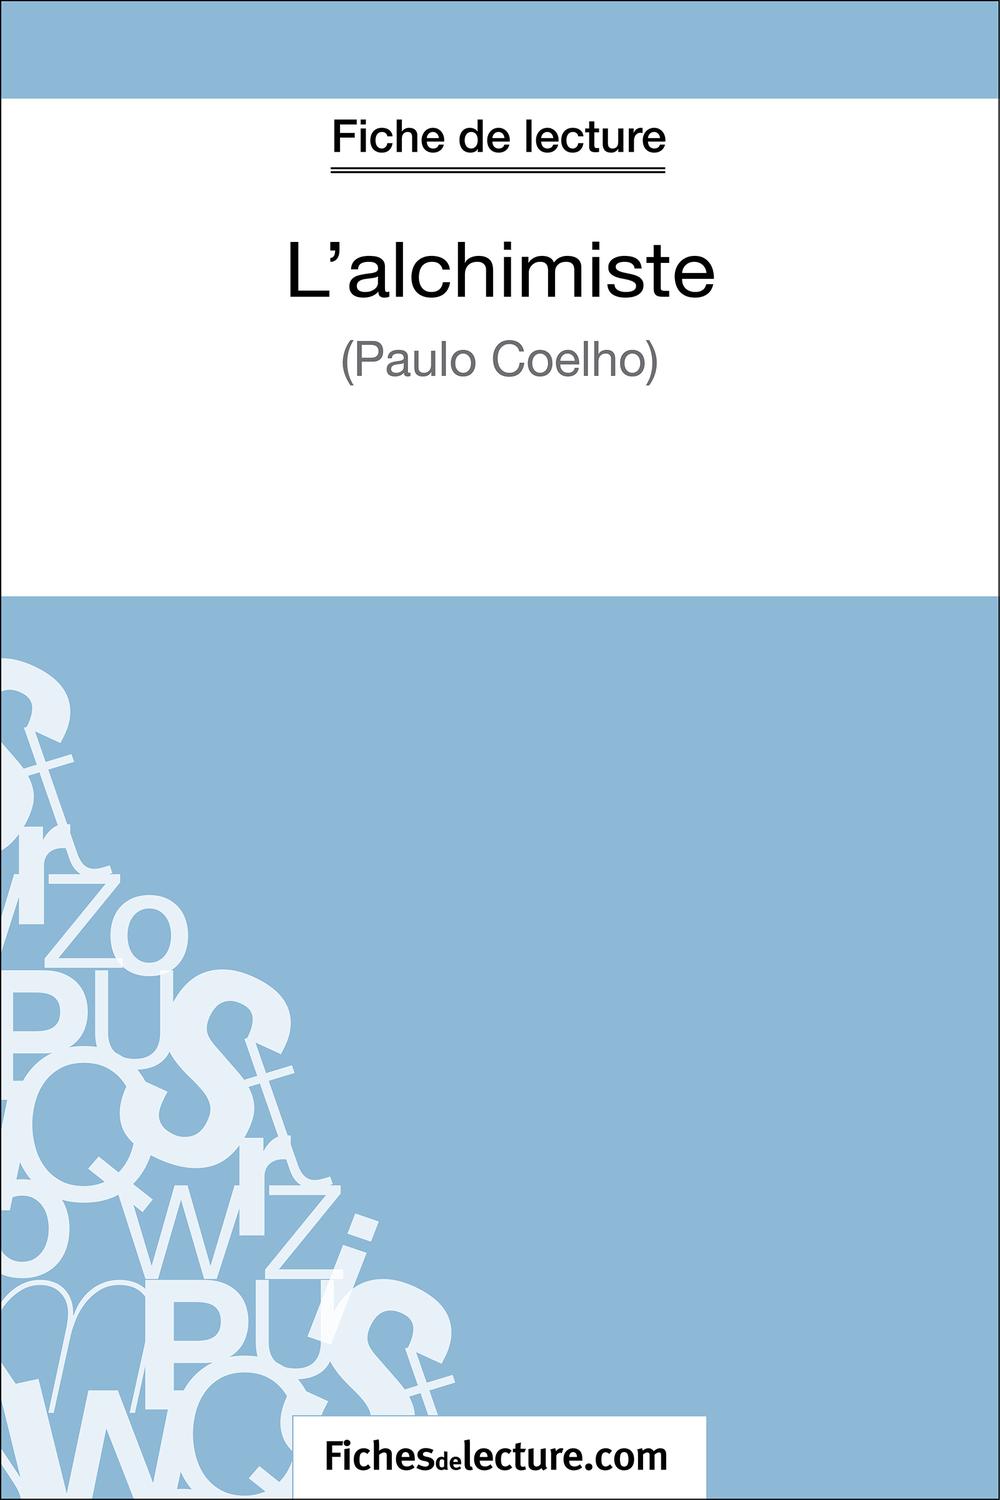 L'alchimiste de Paulo Coelho (Fiche de lecture) - fichesdelecture, Sophie Lecomte